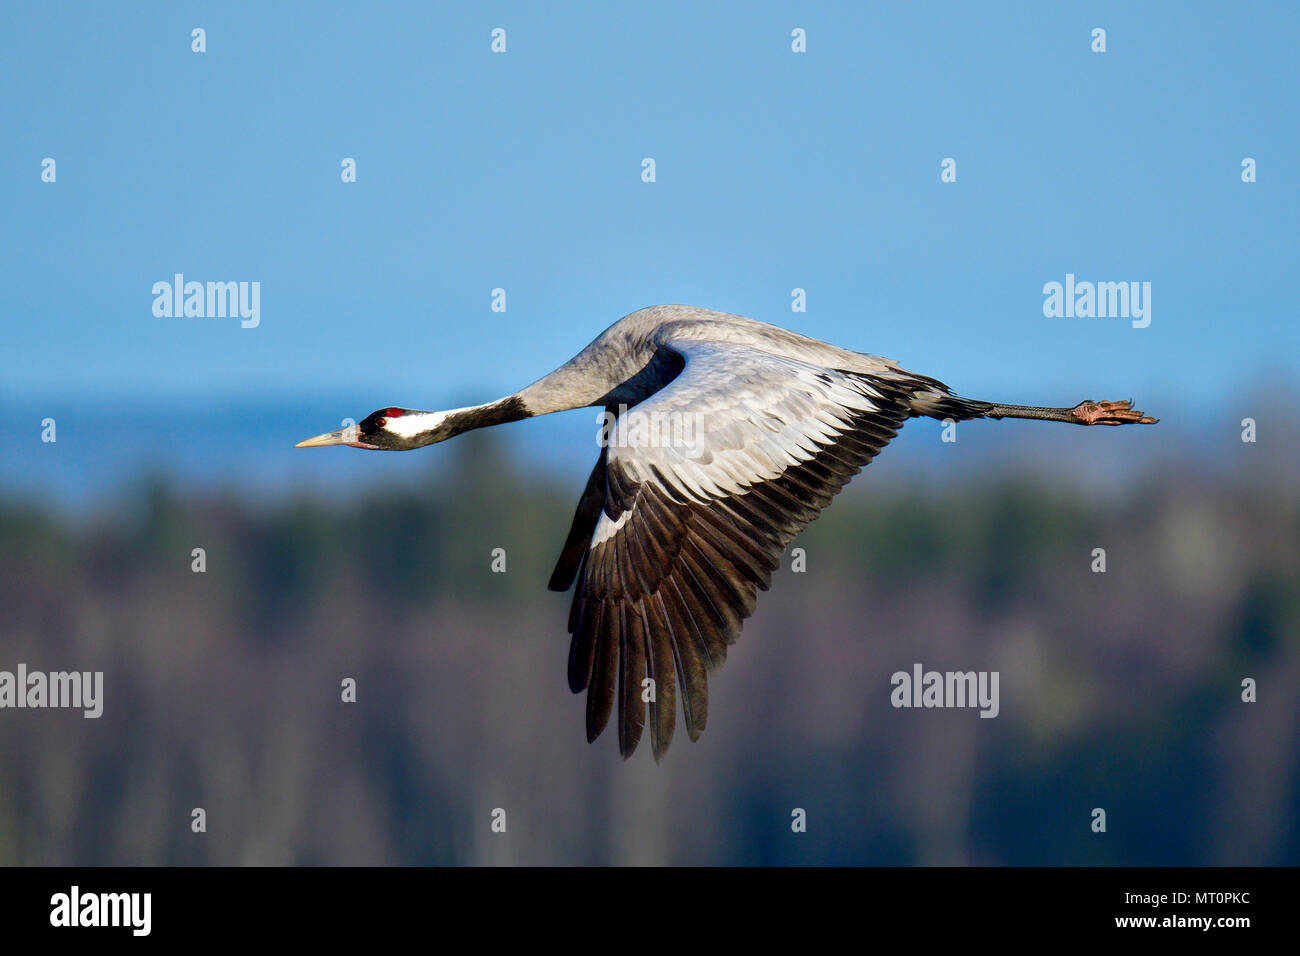 Eurasian crane in full swing Stock Photo